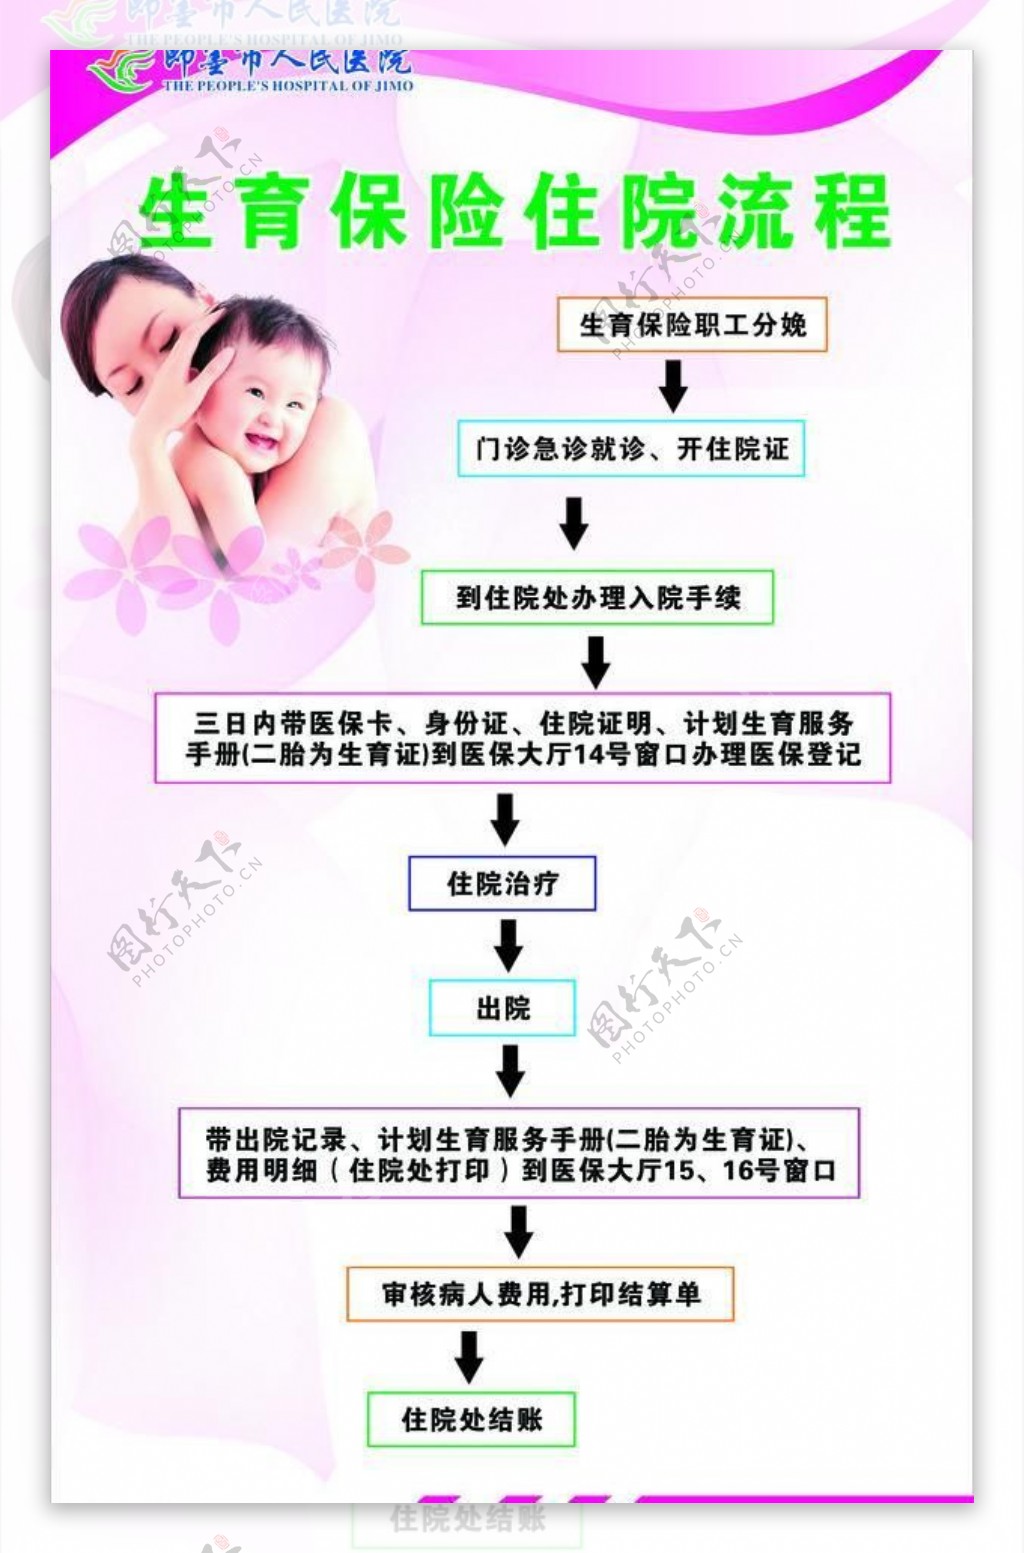 生育保险流程图图片